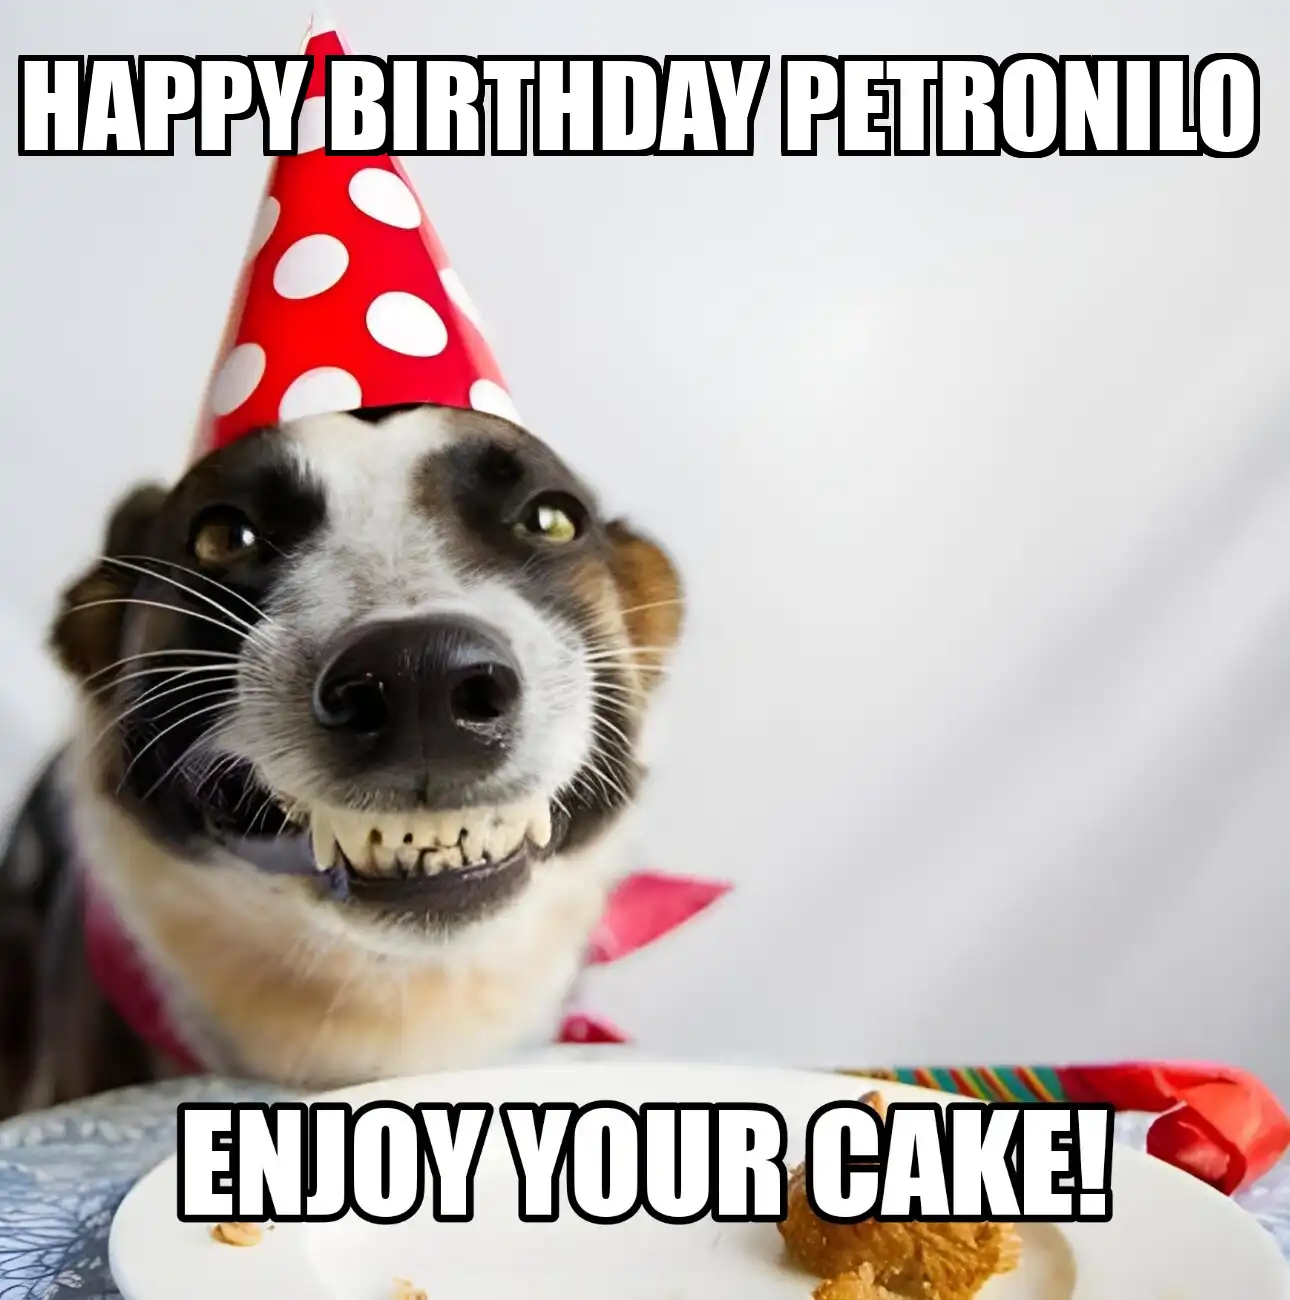 Happy Birthday Petronilo Enjoy Your Cake Dog Meme